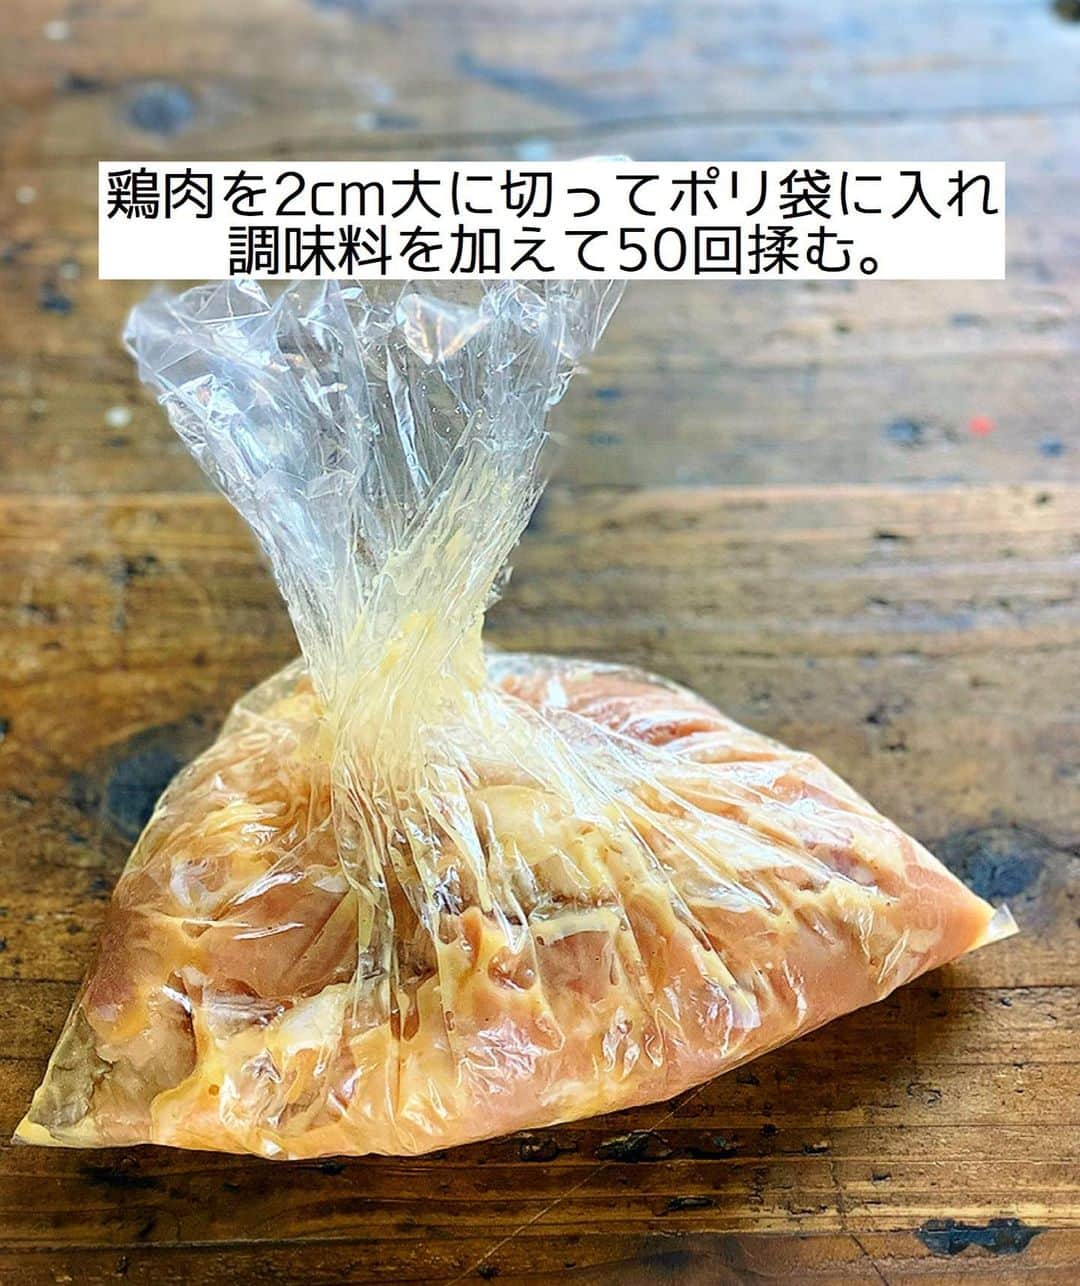 Mizuki【料理ブロガー・簡単レシピ】さんのインスタグラム写真 - (Mizuki【料理ブロガー・簡単レシピ】Instagram)「・﻿ 【#レシピ 】ーーーーーーーーーーー﻿ ♡揉んで焼くだけ♡﻿ 塩だれde超絶危険なやみつきチキン﻿ ーーーーーーーーーーーーーーーーー﻿ ﻿ 　﻿ ﻿ おはようございます(*^^*)﻿ ﻿ 今日ご紹介させていただくのは﻿ 久〜しぶりの #やみつきチキン ！﻿ 大好評だった塩だれ味を﻿ 7年振りに再掲載致します♩﻿ ﻿ 焼き鳥をイメージして作った﻿ やみつきチキン塩バージョン♡﻿ これ、おかずやおつまみ﻿ お弁当にもおすすめですよ〜♩﻿ ﻿ 作り方は超簡単(*´艸`)﻿ 揉んで焼くだけ！！﻿ カットした鶏肉に調味料を揉み込み﻿ 漬け込み無しオイル無しで焼くだけ♡﻿ ﻿ ﻿ ﻿ ＿＿＿＿＿＿＿＿＿＿＿＿＿＿＿＿＿＿＿＿﻿ 【2人分】﻿ 鶏もも肉...1枚(250g)﻿ ●鶏がらスープ・酒...各小1﻿ ●ごま油...大1/2﻿ ●にんにくチューブ...3cm﻿ ●塩こしょう...少々﻿ ﻿ 1.鶏肉を2cm大に切ってポリ袋に入れ、●を加えて50回揉む。﻿ 2.(油なしの)フライパンで両面焼いて火を通す。﻿ ￣￣￣￣￣￣￣￣￣￣￣￣￣￣￣￣￣￣￣￣﻿ ﻿ ﻿ ﻿ ﻿ 《ポイント》﻿ ♦︎火加減は弱めの中火〜中火で♩﻿ ♦︎やみつきチキンはコールドスタート(冷たいフライパンに食材を入れてから火にかける)が向いているお料理です♩﻿ ♦︎むね肉で作る場合は、全体をフォークで刺して1cm厚さの削ぎ切りにして下さい♩﻿ ♦︎［やみつきチキン］は2014年発のシリーズレシピです☺️﻿ ﻿ ﻿ ﻿ ﻿ ﻿ ﻿ 💬💬💬﻿ お約束のチョコテリーヌを﻿ YouTubeにアップしました🥰﻿ ストーリーやハイライトから飛べるので﻿ よかったらお試し下さいね💕﻿ (インスタライブ終盤で﻿ 唐突に登場したやつ(笑))﻿ 【YouTube】→🔍奇跡のキッチン🔍﻿ ﻿ ﻿ ﻿ ﻿ ﻿ ﻿ ＿＿＿＿＿＿＿＿＿＿＿＿＿＿＿＿＿＿﻿ 🎁器プレゼントキャンペーン実施中🎁﻿ ￣￣￣￣￣￣￣￣￣￣￣￣￣￣￣￣￣￣﻿ おかげざで［今どき和食］が10刷増版となりました✨﻿ そこで心ばかりですが感謝の気持ちをお伝えしたく﻿ 《器プレゼントキャンペーンを実施中です♩》﻿ ▼ ▼ ▼﻿ ＿＿＿＿＿＿＿＿＿﻿ 【プレゼント内容】﻿ ￣￣￣￣￣￣￣￣￣﻿ 今人気の波佐見焼 大皿1枚﻿ もしくは小皿2枚セットを15名様に﻿ ＿＿＿＿＿＿＿＿＿﻿ 【応募方法】﻿ ￣￣￣￣￣￣￣￣￣﻿ ❶［Mizukiの今どき和食］から﻿ 1品ご自身で作った料理画像、﻿ もしくはカバー(表紙)画像を準備。﻿ ❷［#Mizukiの今どき和食器プレゼント ］﻿ のタグを付けて投稿！﻿ (以上で応募完了です😊　2/14〆切)﻿ _________________________________﻿ ﻿ 　﻿ ﻿ ﻿ ﻿ ﻿ ⭐️発売中⭐️﻿ ＿＿＿＿＿＿＿＿＿＿＿＿＿＿＿＿＿＿﻿ ホケミレシピの決定版♩﻿ \はじめてでも失敗しない/﻿ 📙#ホットケーキミックスのお菓子 📙﻿ ﻿ NHKまる得マガジンテキスト☆﻿ ホットケーキミックスで﻿ 📗絶品おやつ&意外なランチ📗﻿ ﻿ しんどくない献立、考えました♩﻿ \15分でいただきます/﻿ 📕#Mizukiの2品献立 📕﻿ ﻿ 和食をもっとカジュアルに♩﻿ \毎日のごはんがラクになる/﻿ 📘Mizukiの今どき和食 📘﻿ ﻿ 重版しました！﻿ ありがとうございます😭﻿ 📗ラクしておいしい！1品晩ごはん 📗﻿ ﻿ 摂食障害から料理研究家になるまでを綴った﻿ はじめてのエッセイ本﻿ 📙普通のおいしいをつくるひと 📙﻿ ￣￣￣￣￣￣￣￣￣￣￣￣￣￣￣￣￣￣￣﻿ ﻿ ﻿ ﻿ ﻿ ﻿ ＿＿＿＿＿＿＿＿＿＿＿＿＿＿＿＿＿＿﻿ レシピを作って下さった際や﻿ レシピ本についてのご投稿には﻿ タグ付け( @mizuki_31cafe )して﻿ お知らせいただけると嬉しいです😊💕﻿ ￣￣￣￣￣￣￣￣￣￣￣￣￣￣￣￣￣￣﻿ ﻿ ﻿ ﻿ ﻿ ﻿ #鶏肉#やみちき#揉んで焼くだけ#やみつきチキンシリーズ#塩だれ#Mizuki#簡単レシピ#時短レシピ#節約レシピ#料理#フーディーテーブル#マカロニメイト#おうちごはん#デリスタグラマー#料理好きな人と繋がりたい#おうちごはんlover#写真好きな人と繋がりたい#foodpic#cooking#recipe#lin_stagrammer#foodporn#yummy#f52grams#塩だれやみつきチキンm」2月11日 7時54分 - mizuki_31cafe